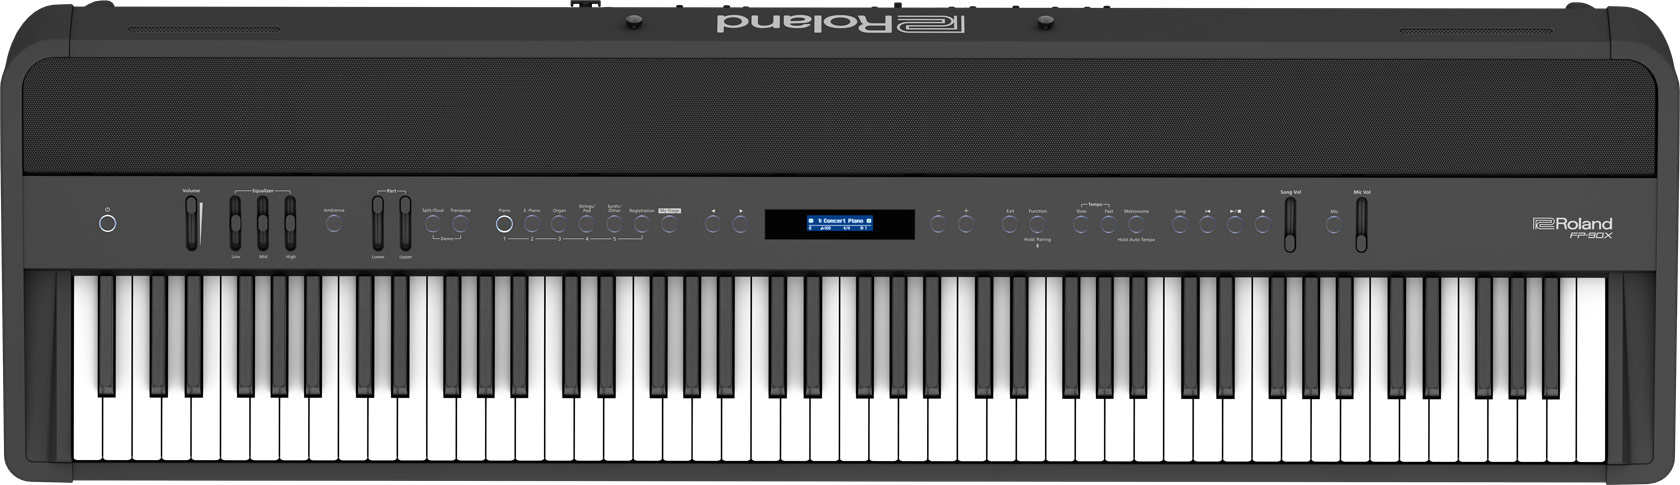 【非凡樂器】ROLAND FP-90X數位鋼琴 /黑色 /含全原廠配備(譜架、踏板) / 公司貨保固